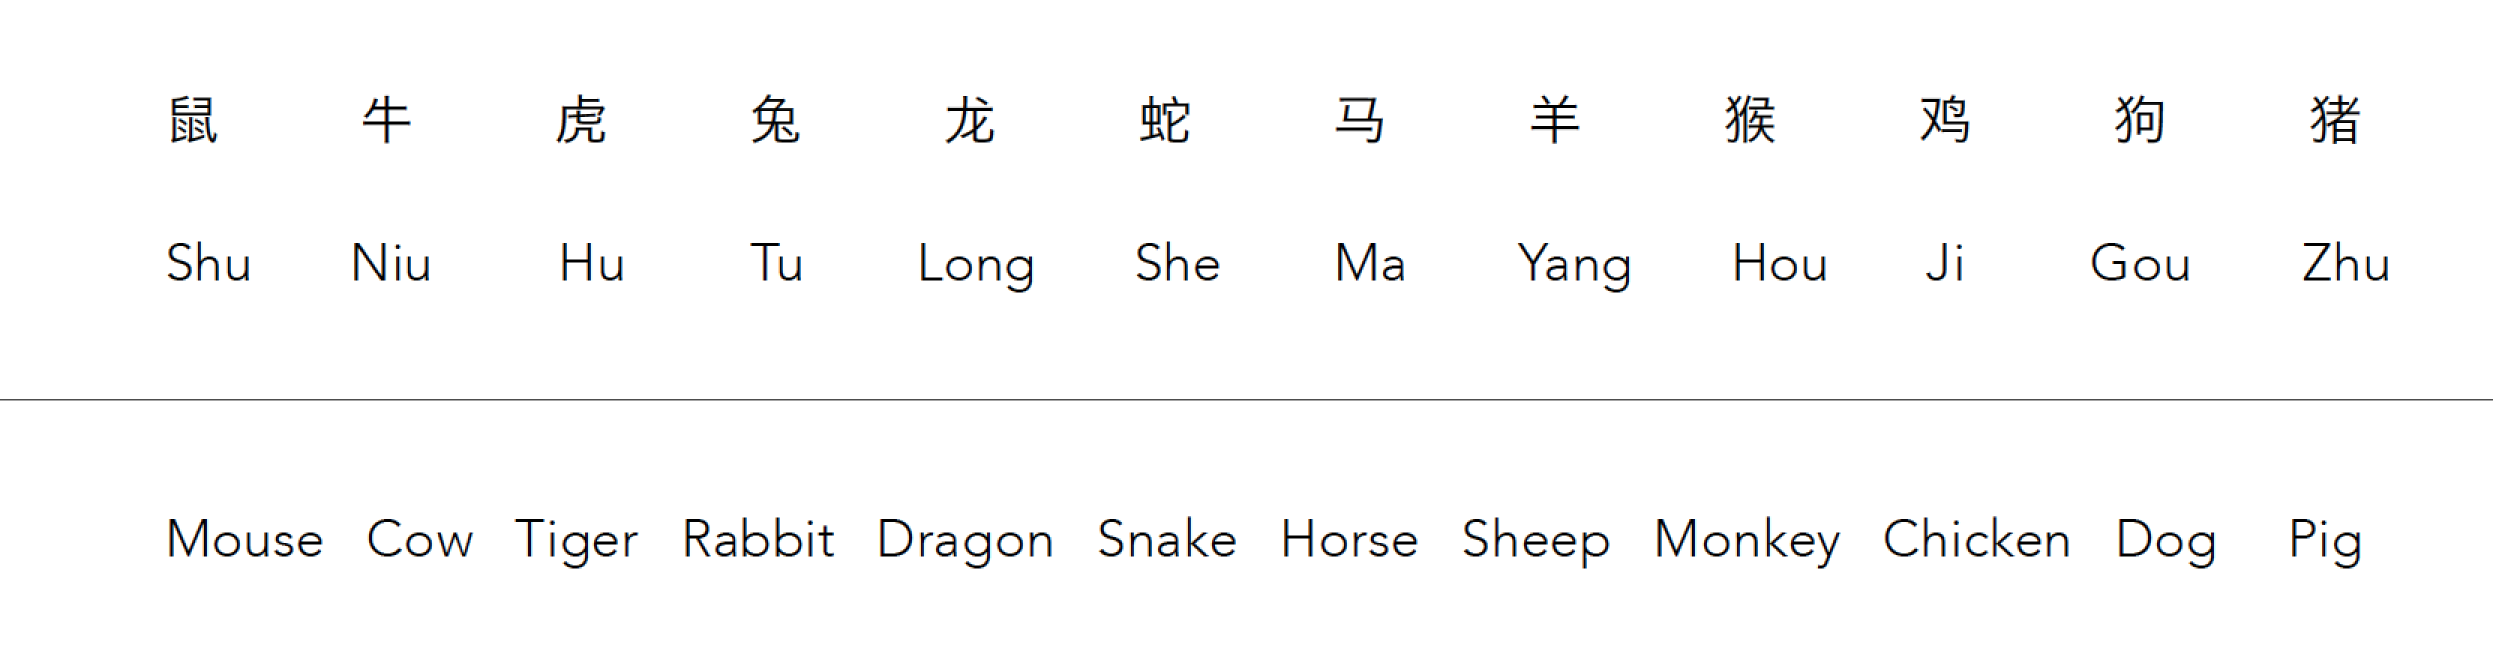 chinese-zodiacs